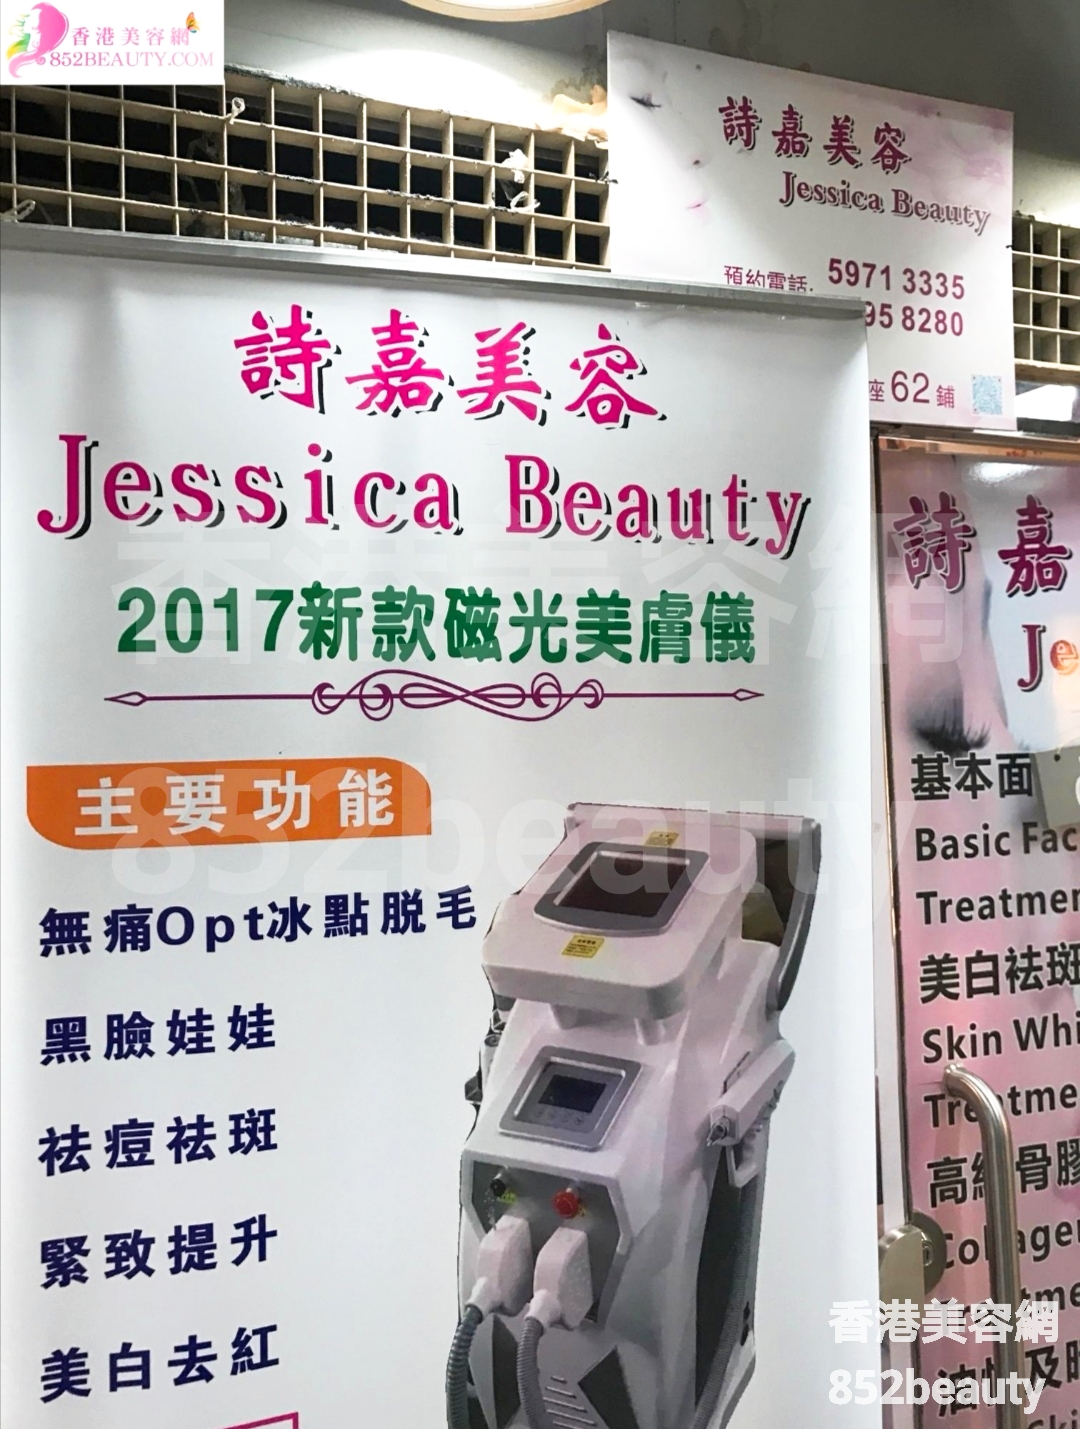 : 詩嘉美容 Jessica Beauty